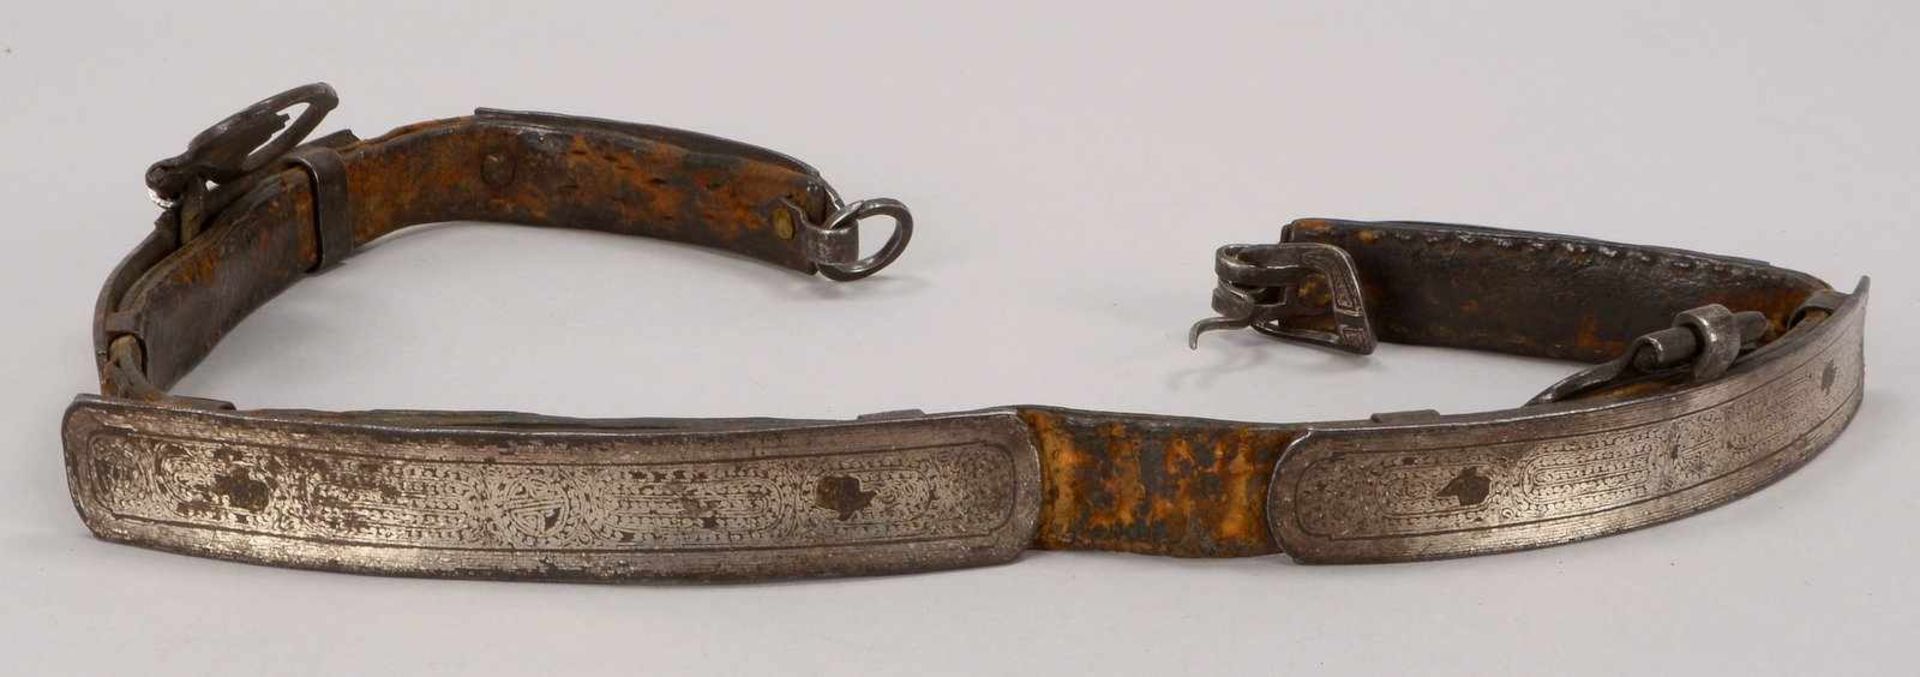 Gürtel (Tibet/wohl 15. Jahrhundert), Leder mit ornamentalen Silberbeschlägen; Länge ca. 84 cm (mit